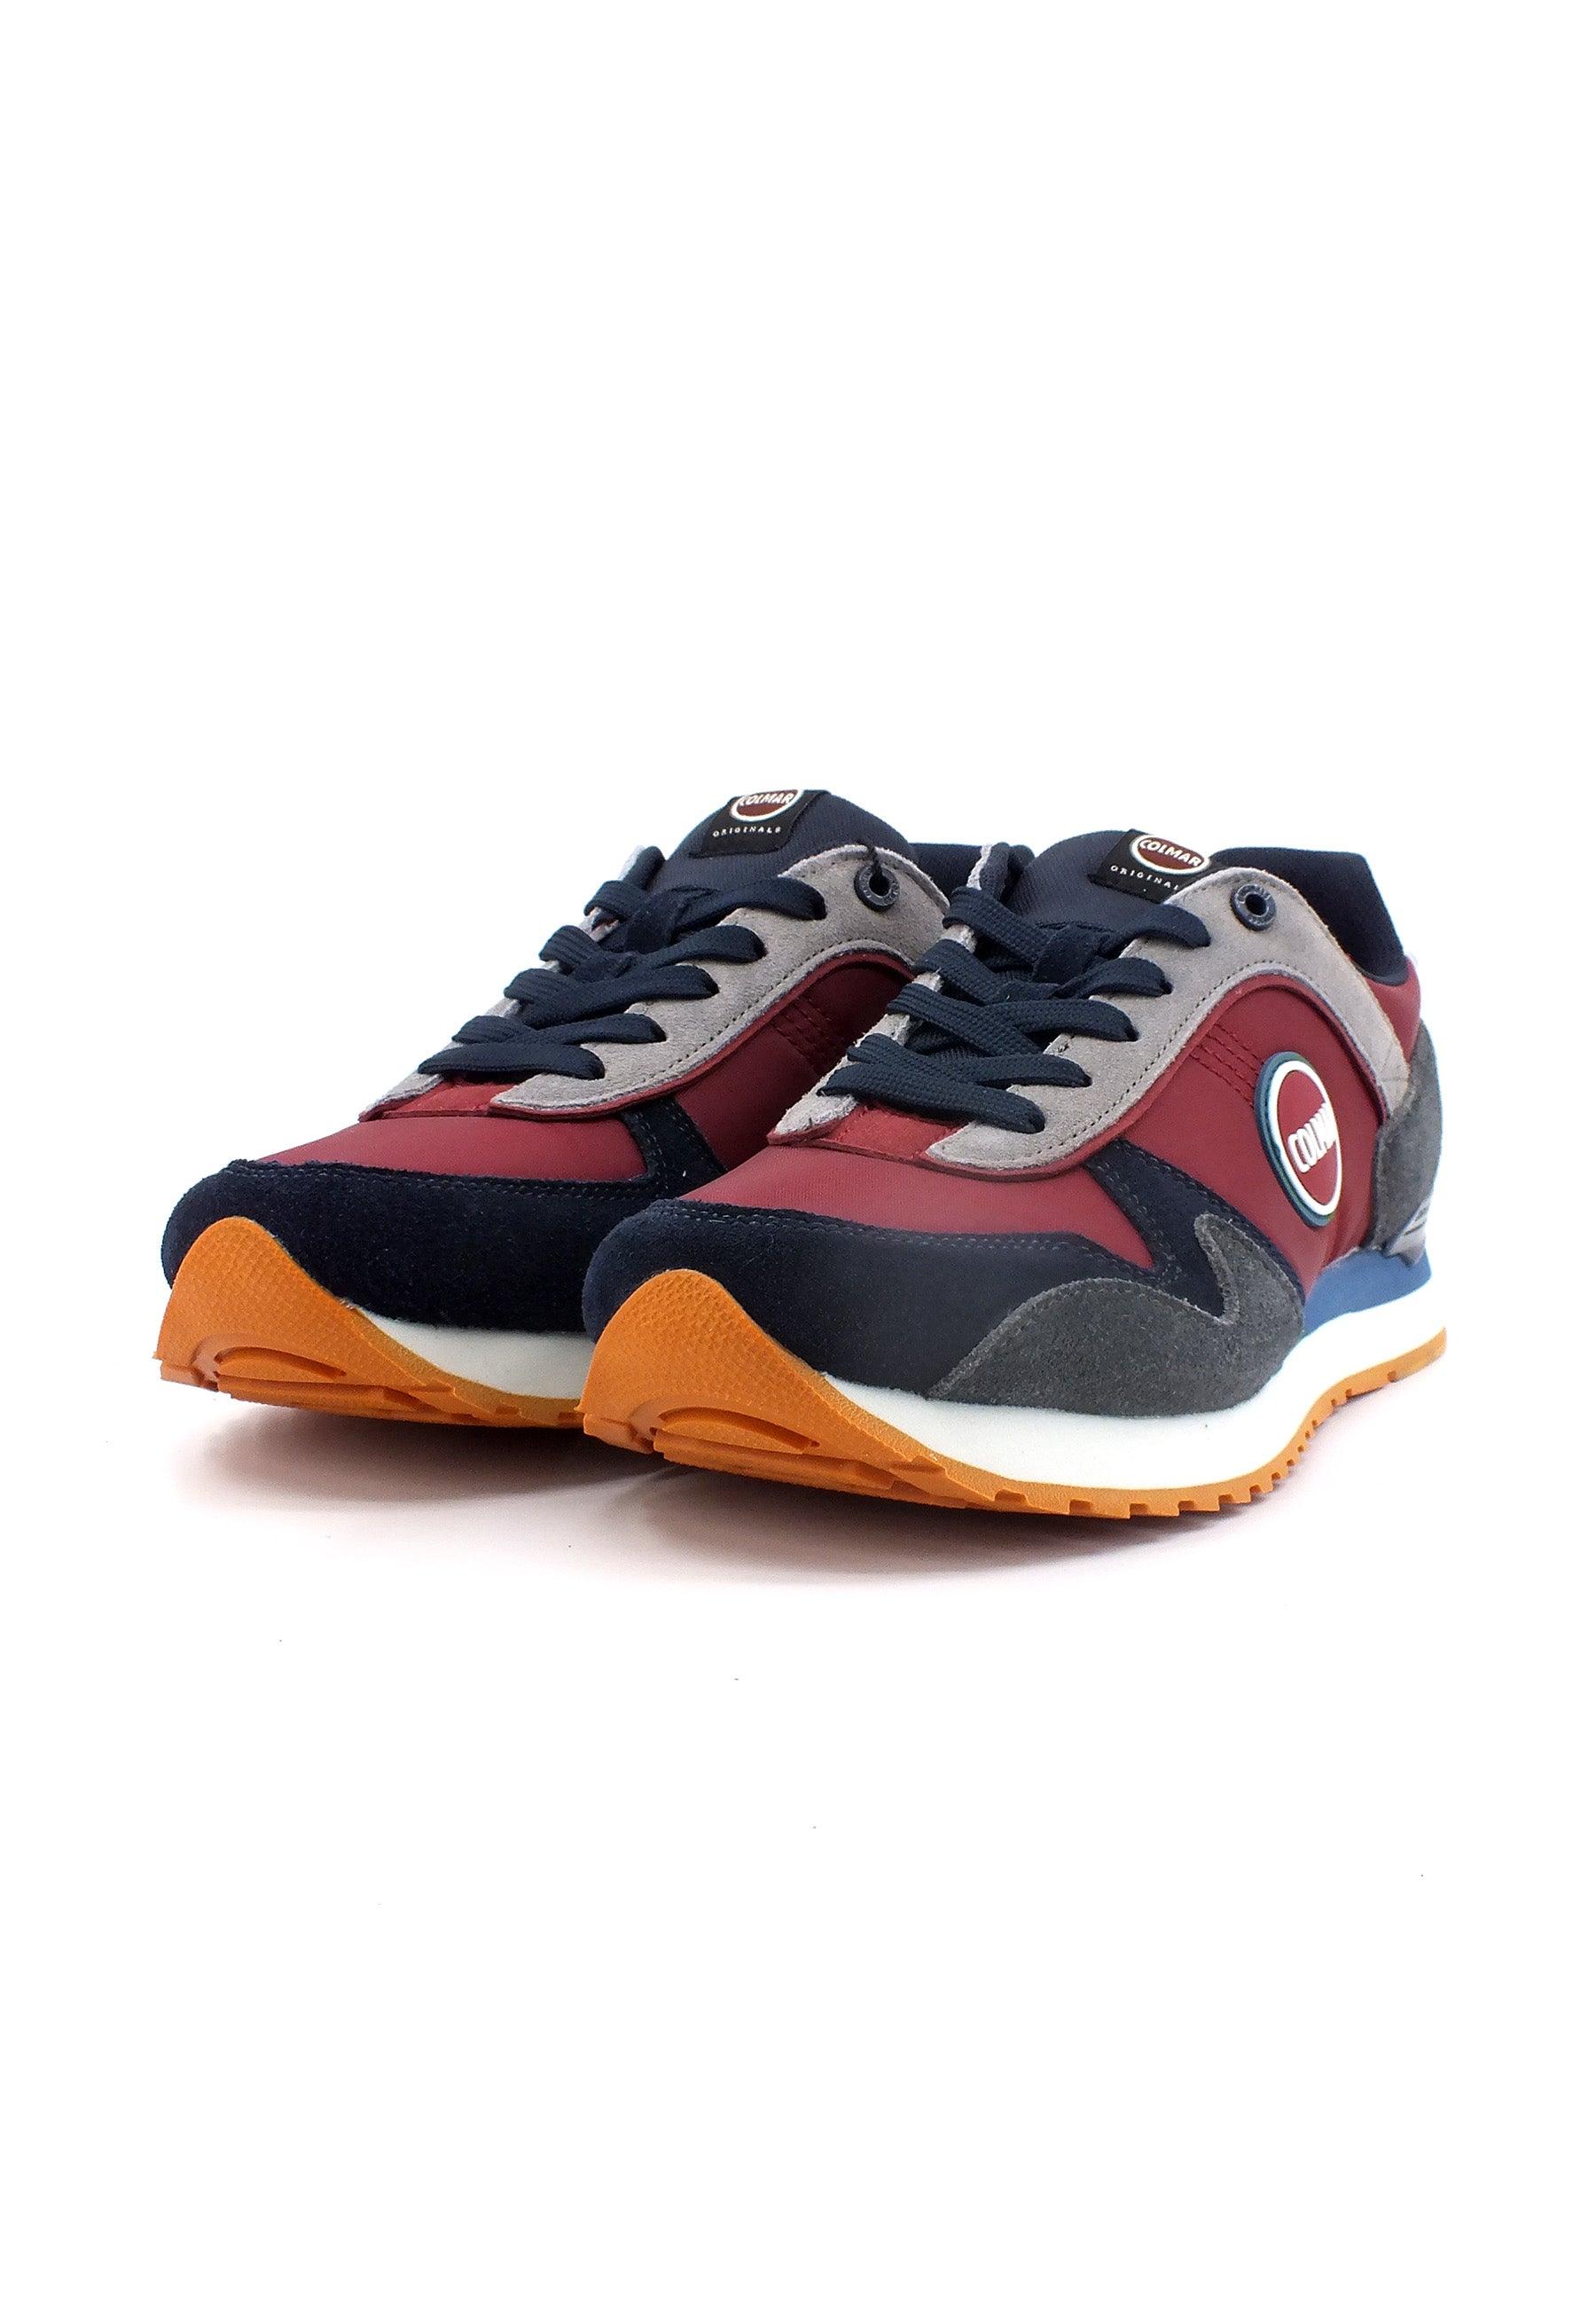 COLMAR Sneaker Uomo Bordeaux Multicolor TRAVIS PRO SHADES - Sandrini Calzature e Abbigliamento